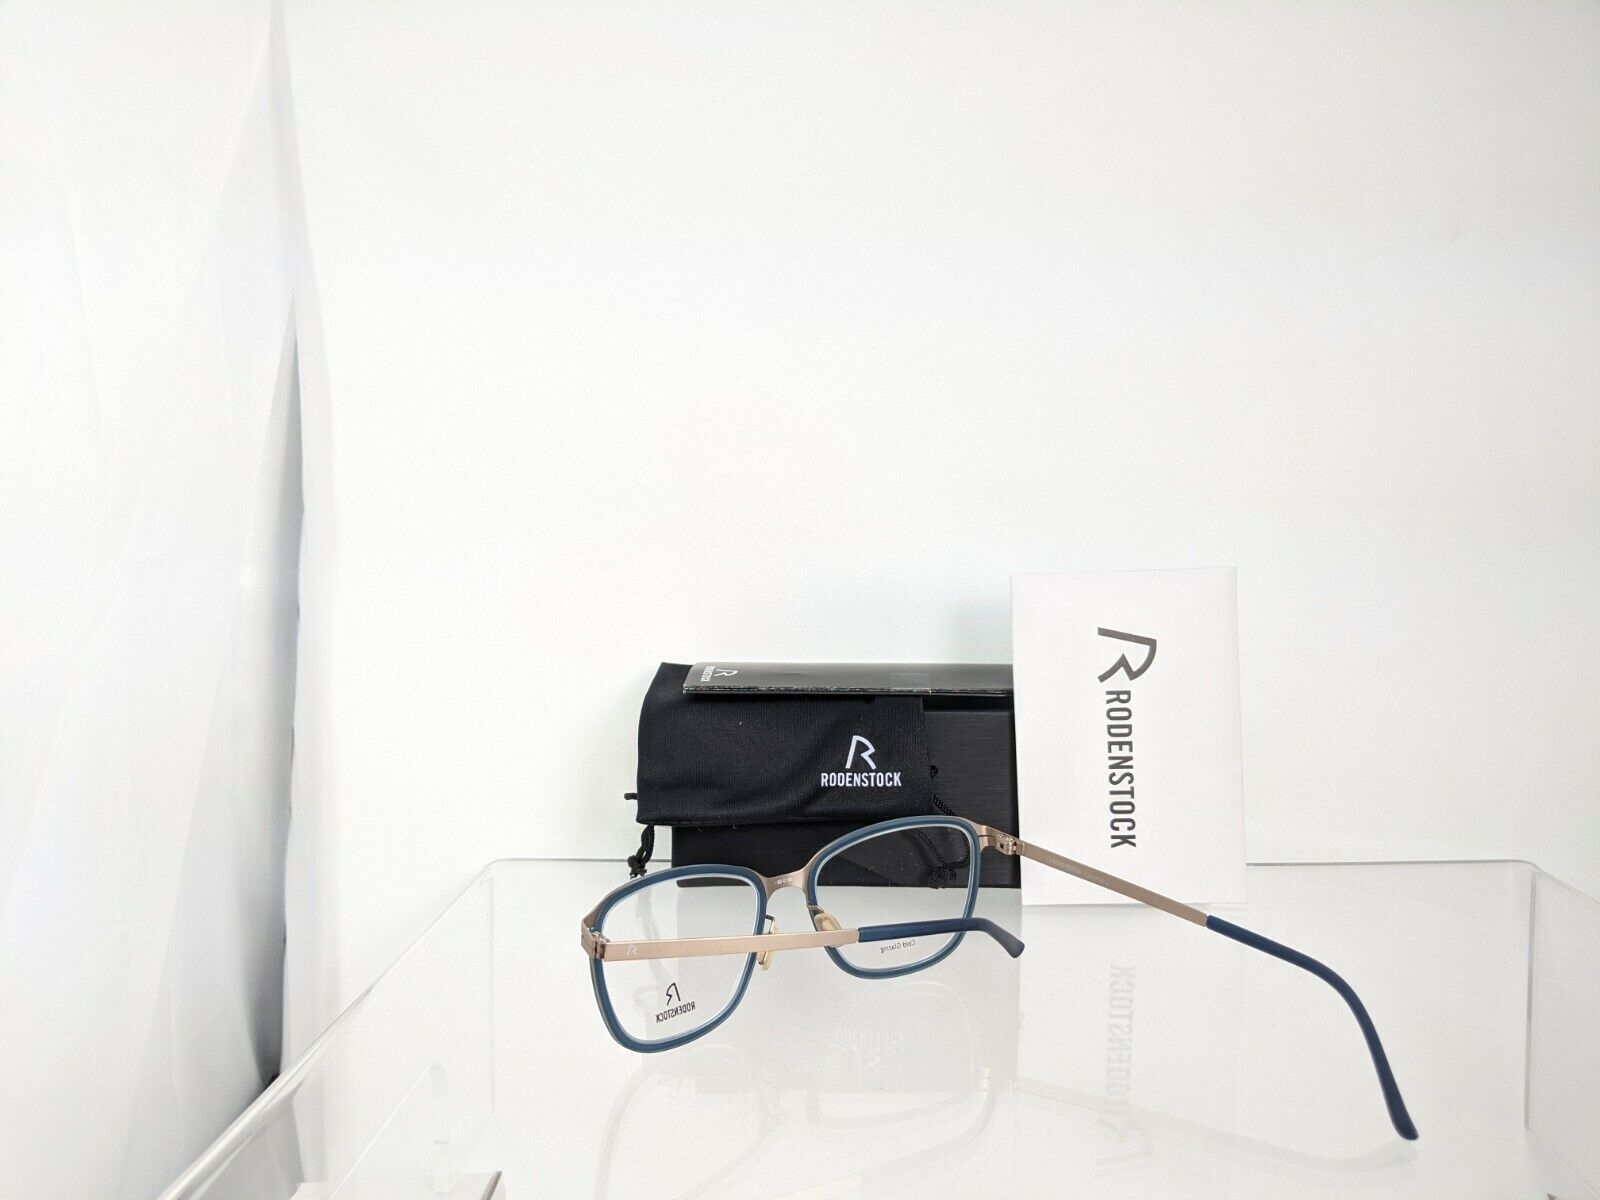 Brand New Authentic Rodenstock Eyeglasses R 2566 B 52mm Frame